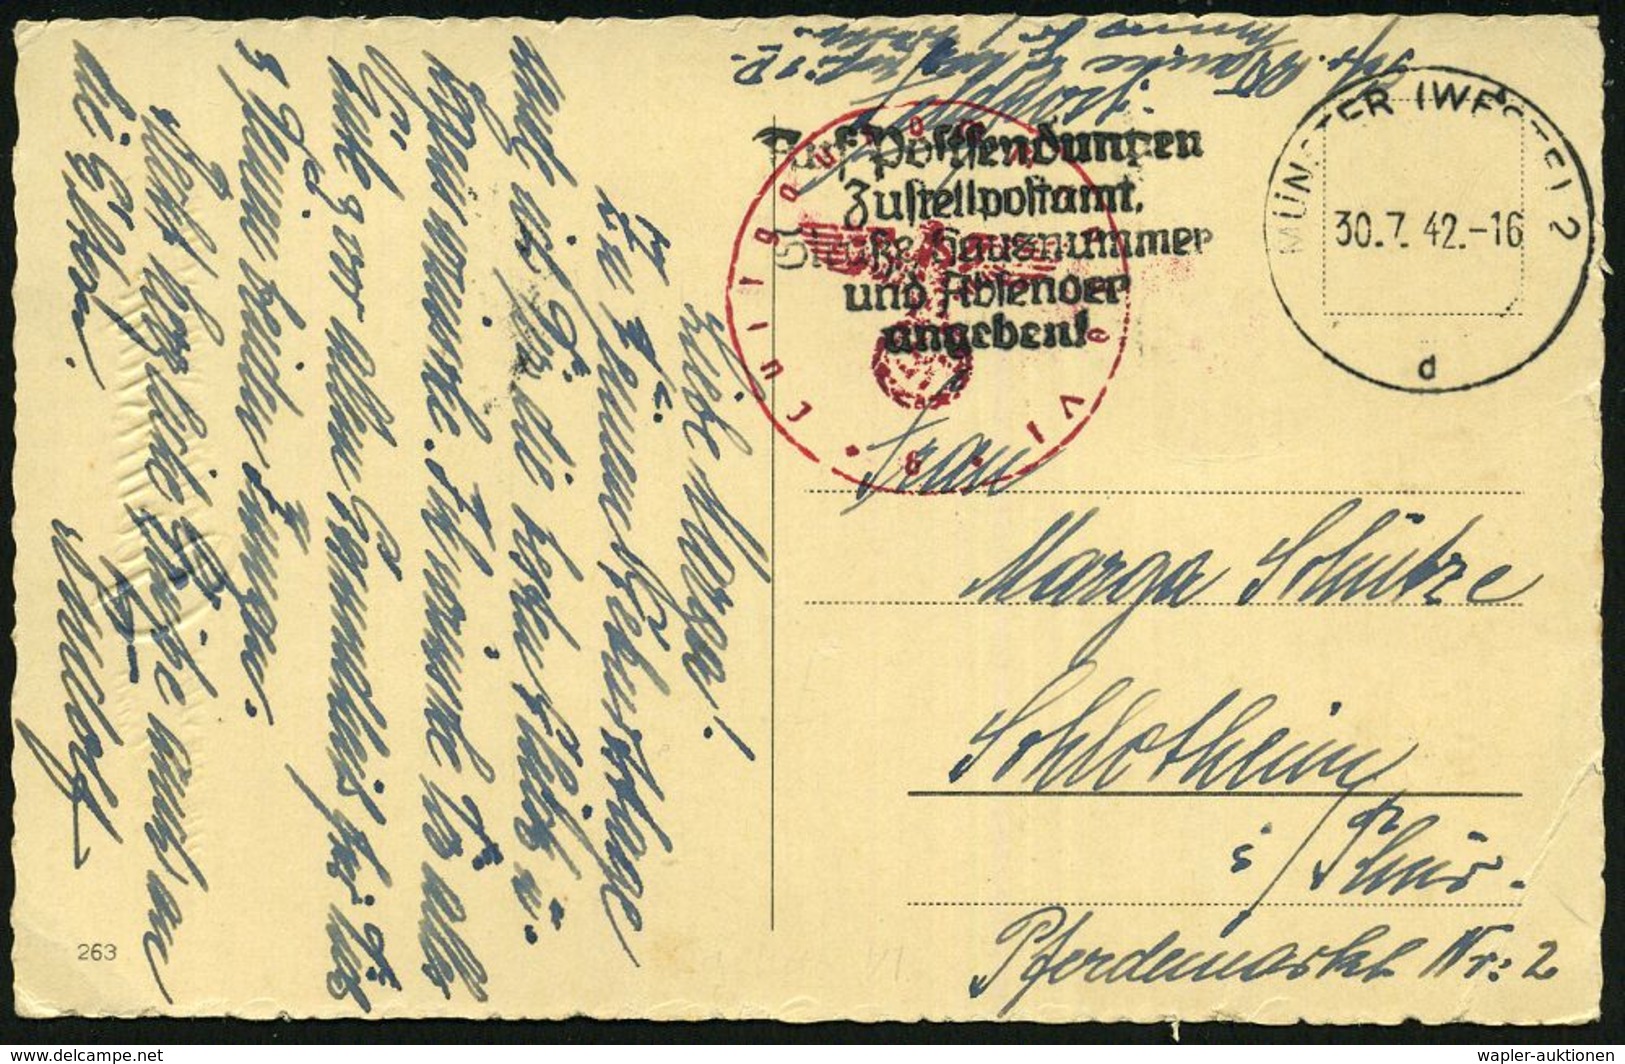 MÜNSTER (WESTF) 2/ Dd/ EIGENE VORSICHT/ BESTER UNFALLSCHUTZ #bzw.# Auf Postsendungen/ Zustell-postamt../ Angeben. 1941/4 - WO2